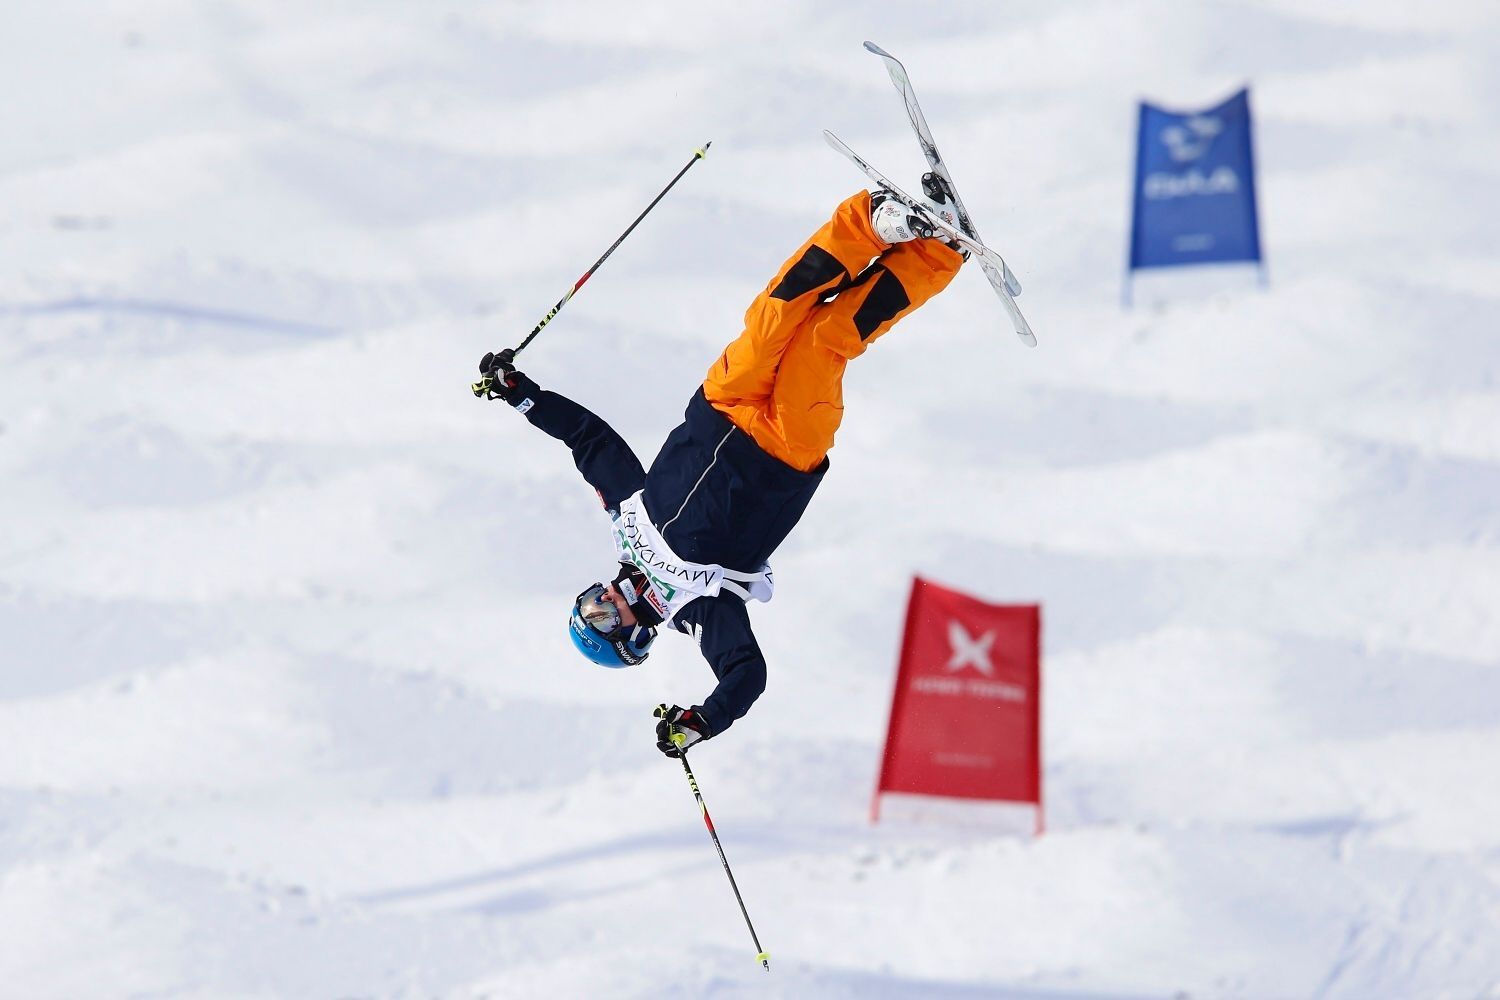 MS v akrobatickém lyžování 2013, jízda v boulích: Ville Miettunen